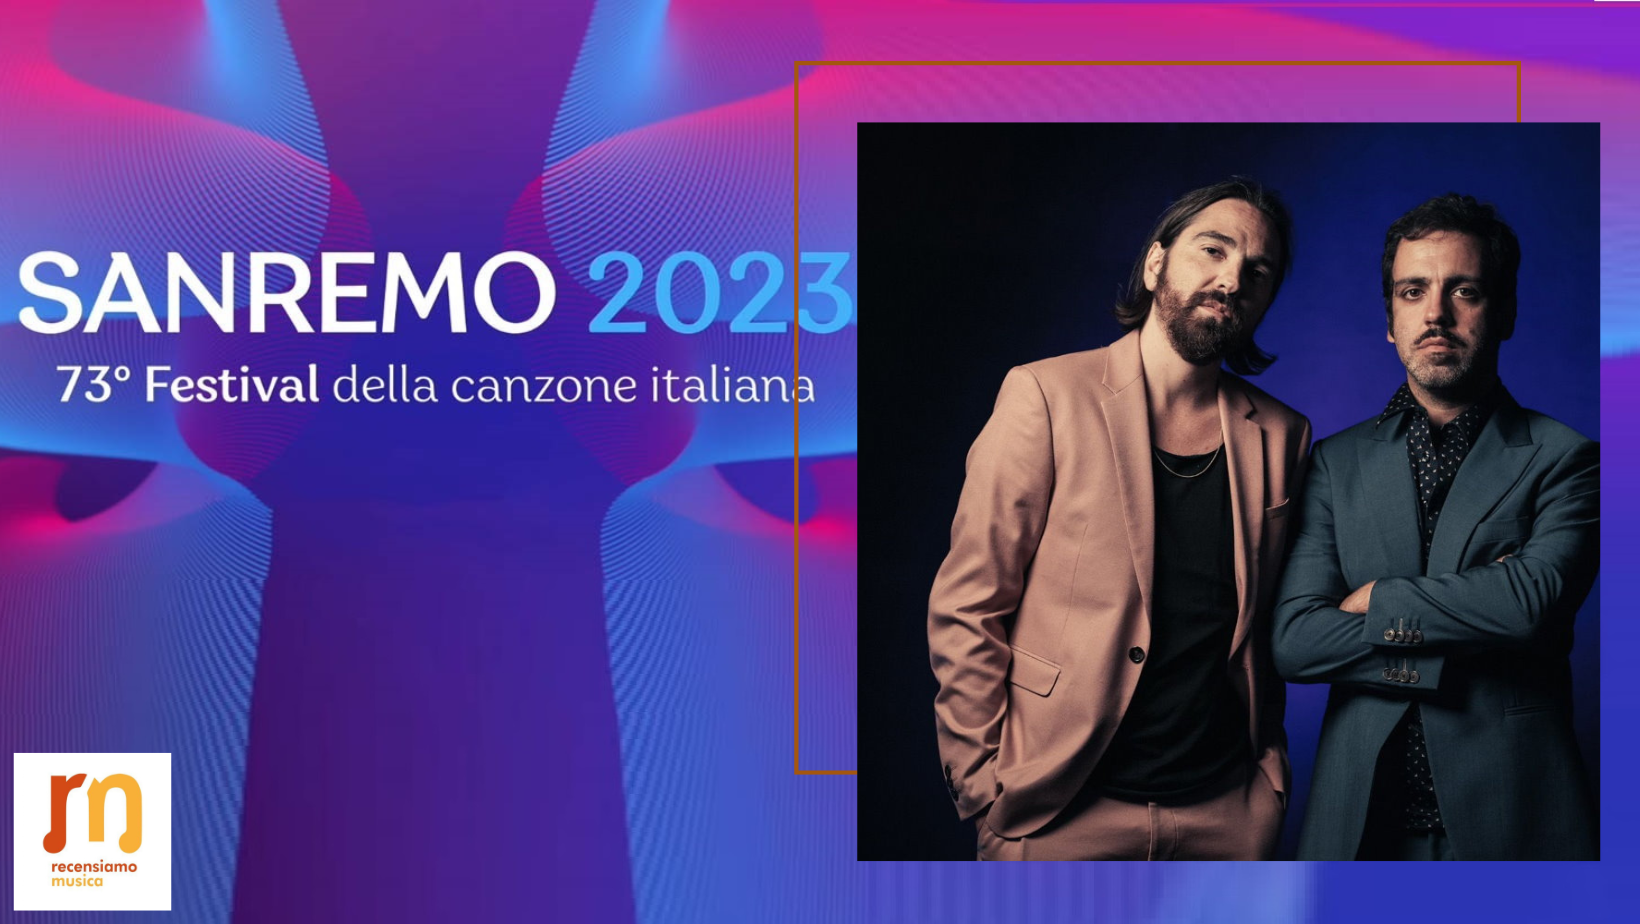 Colapesce Dimartino Sanremo 2023